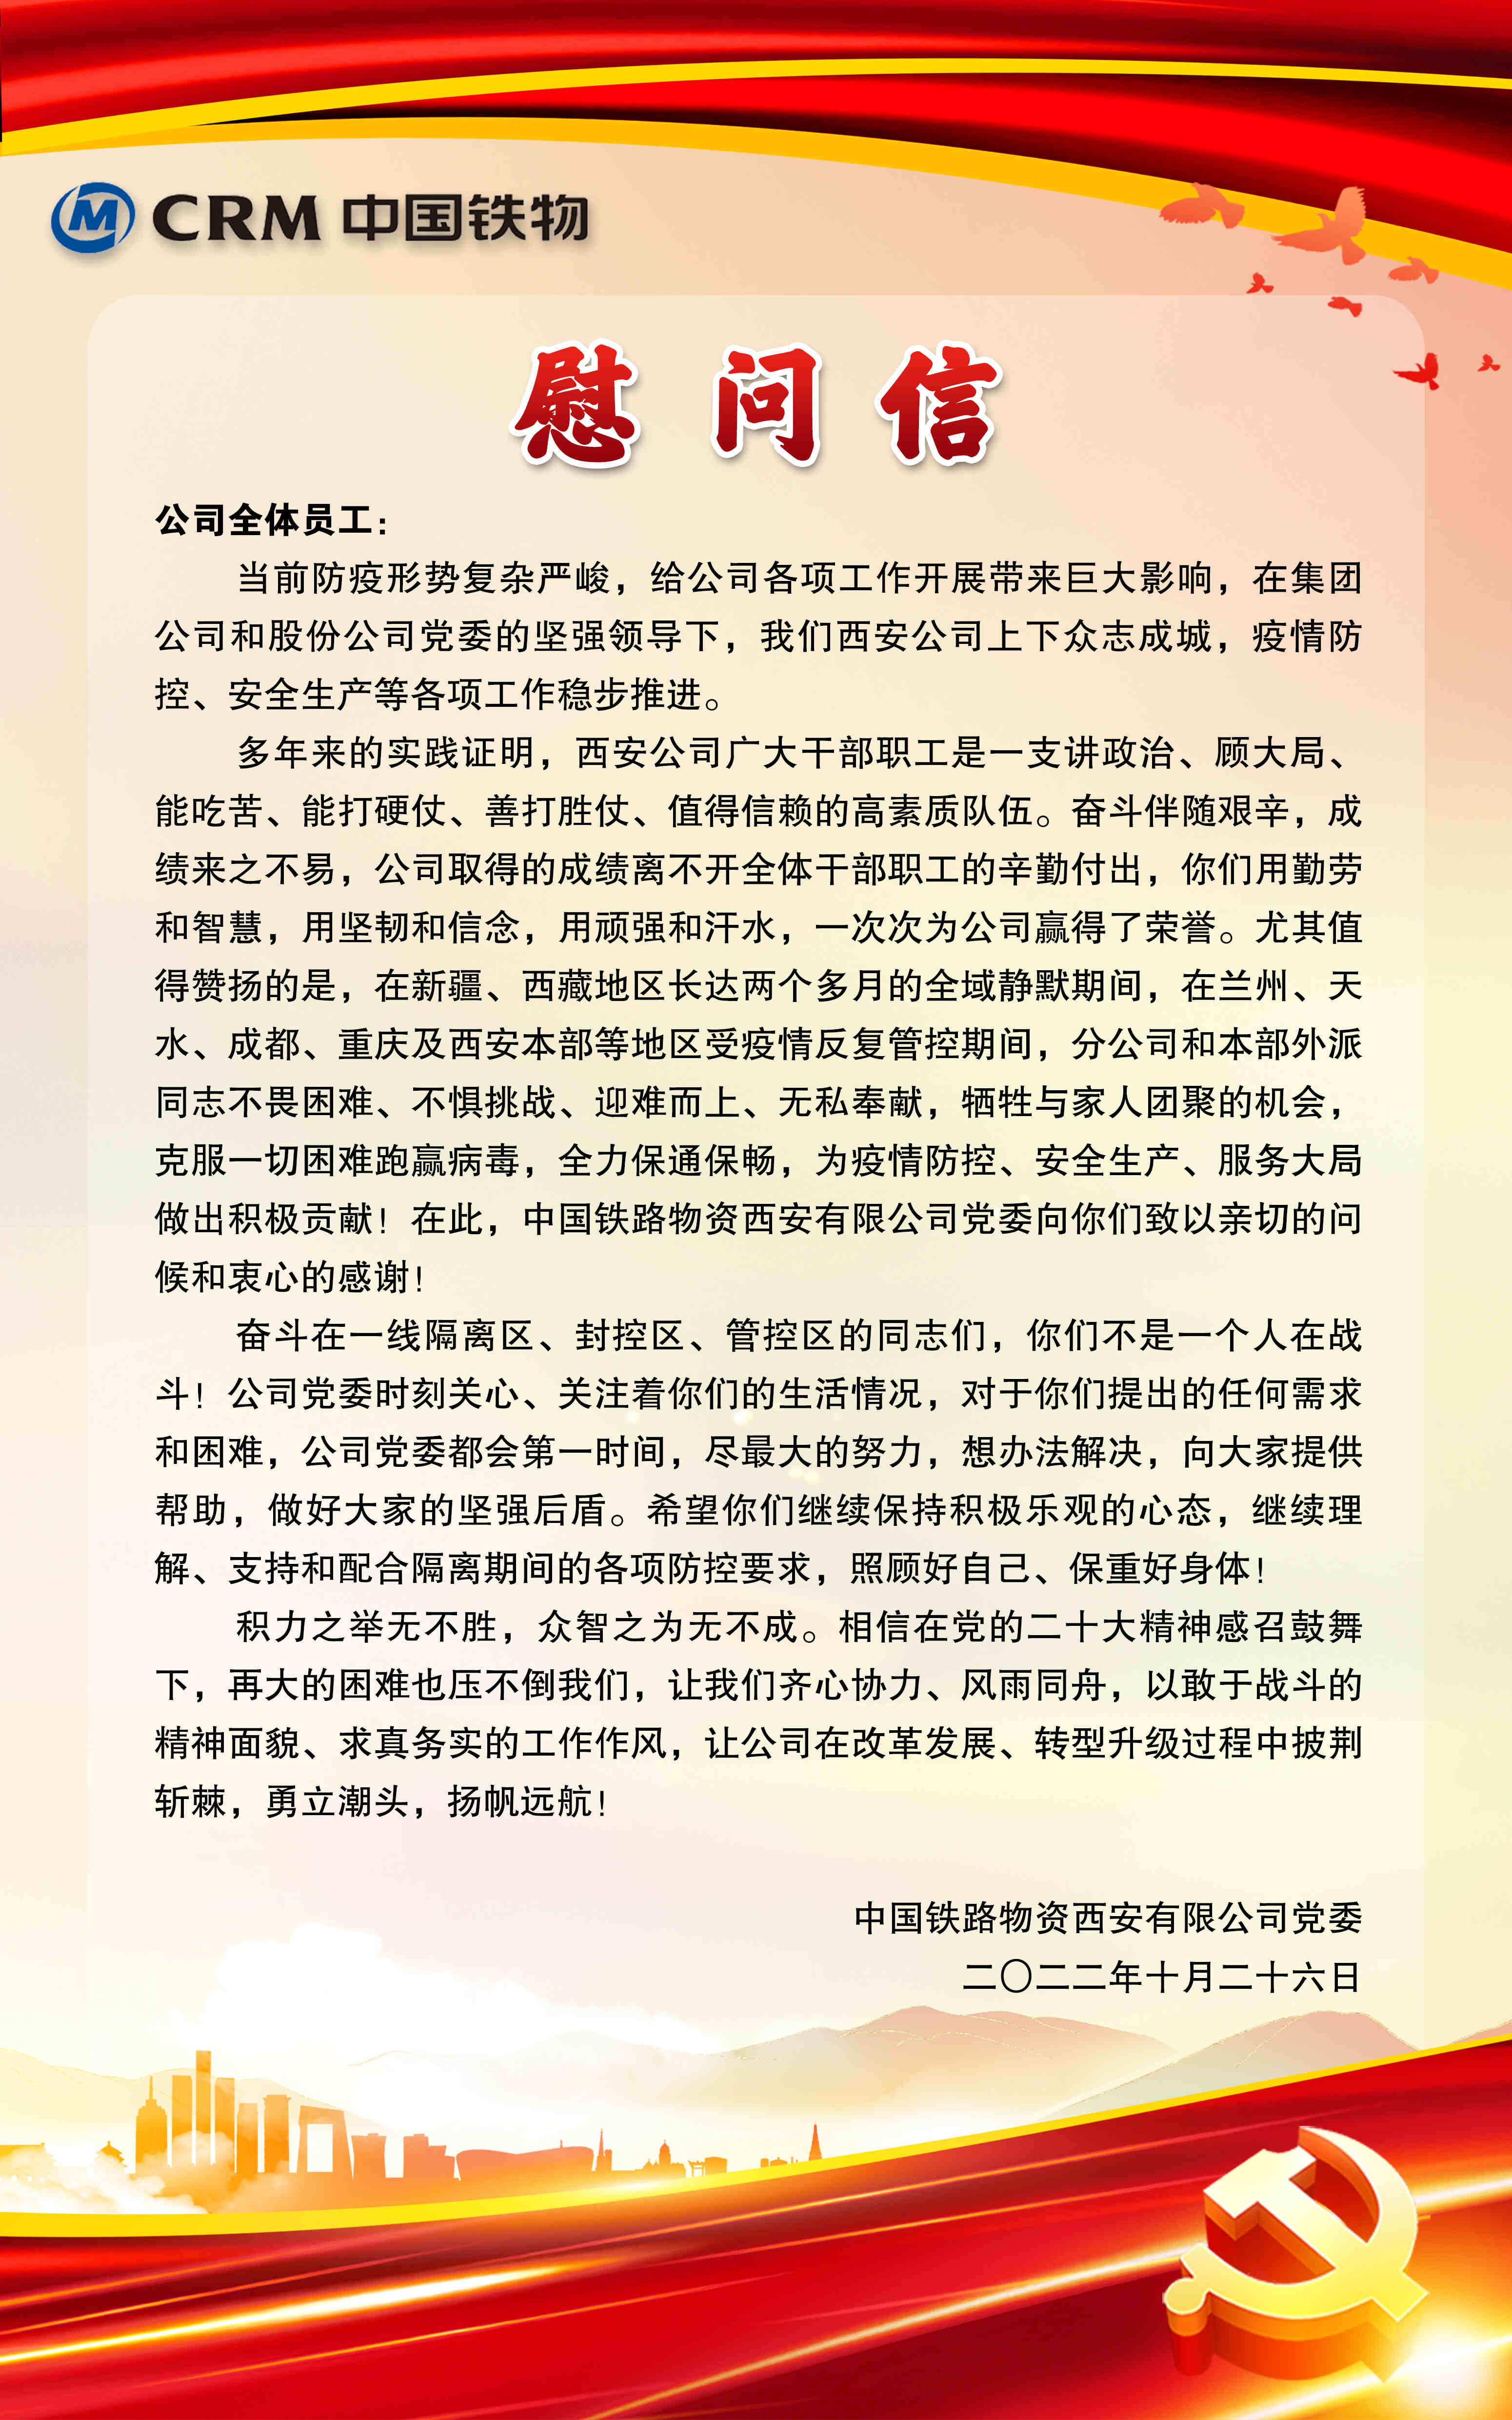 西安公司党委致全体员工的一封慰问信